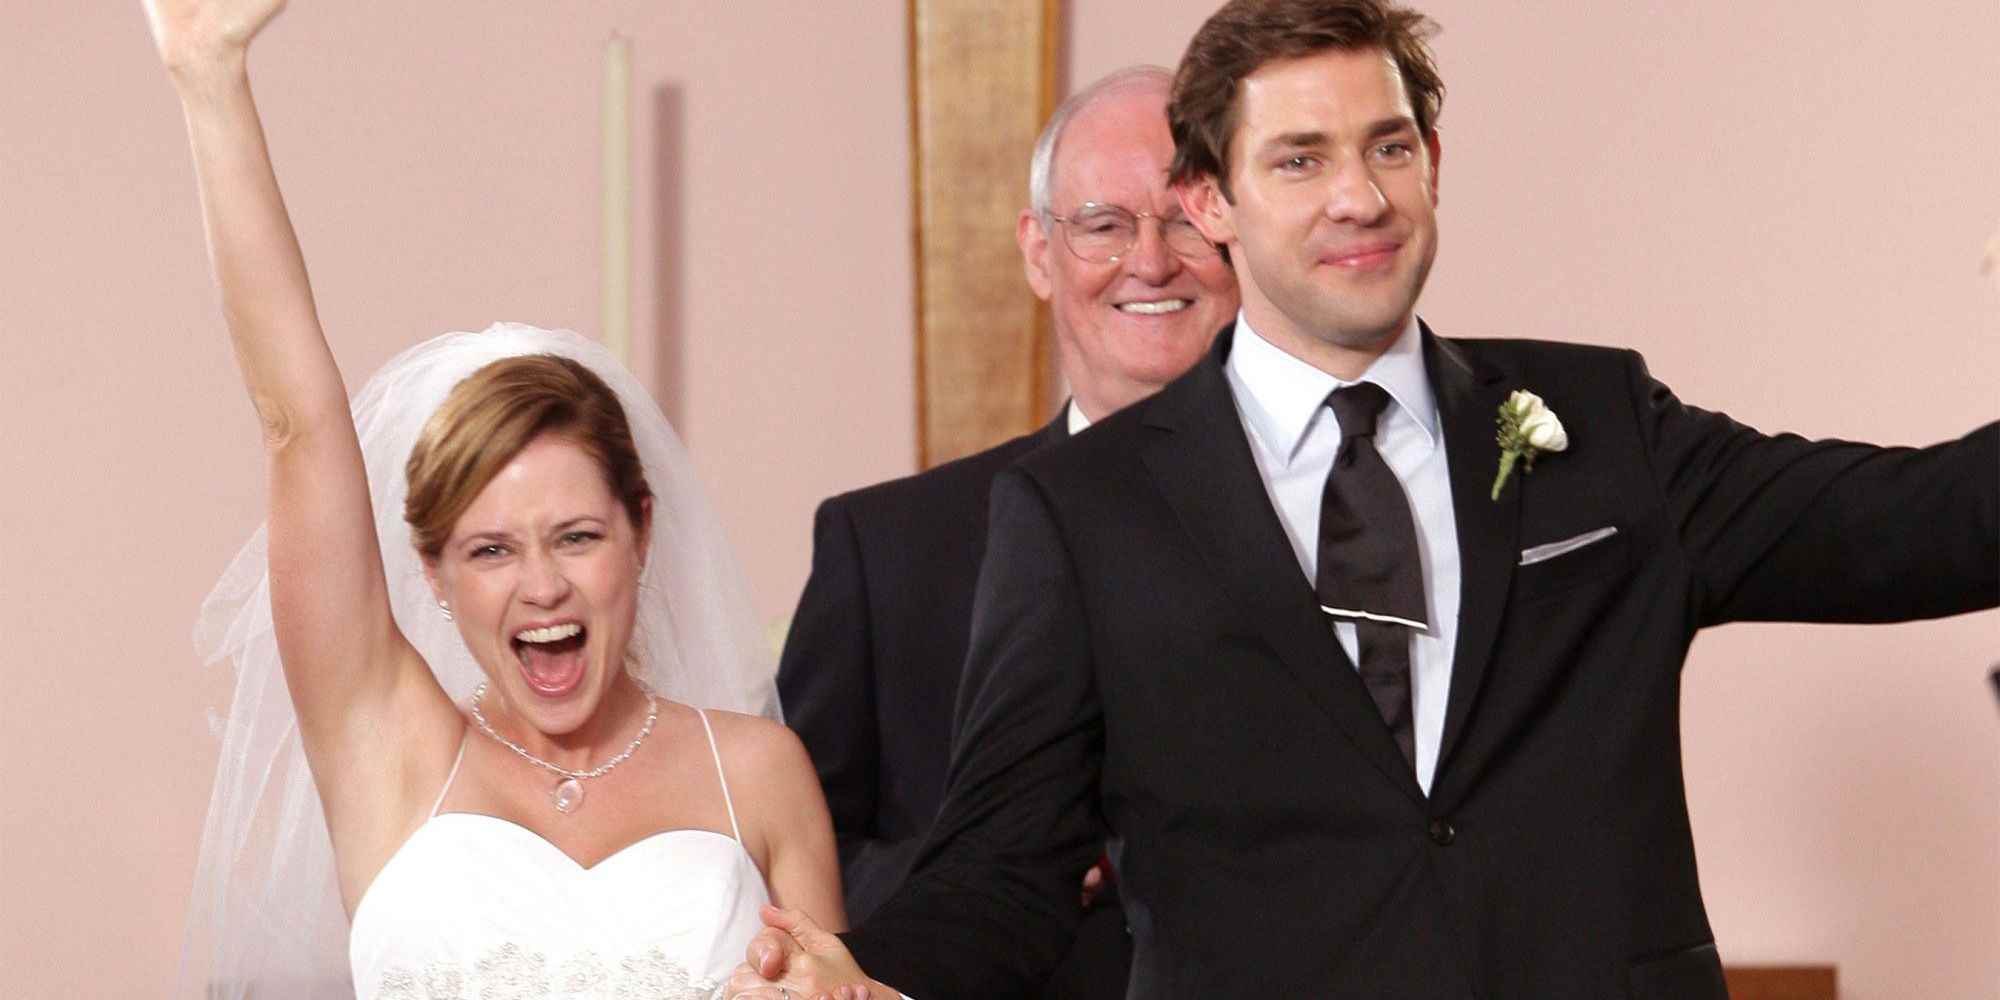 Jim ve Pam, The Office'teki düğünlerinde gülümsüyor